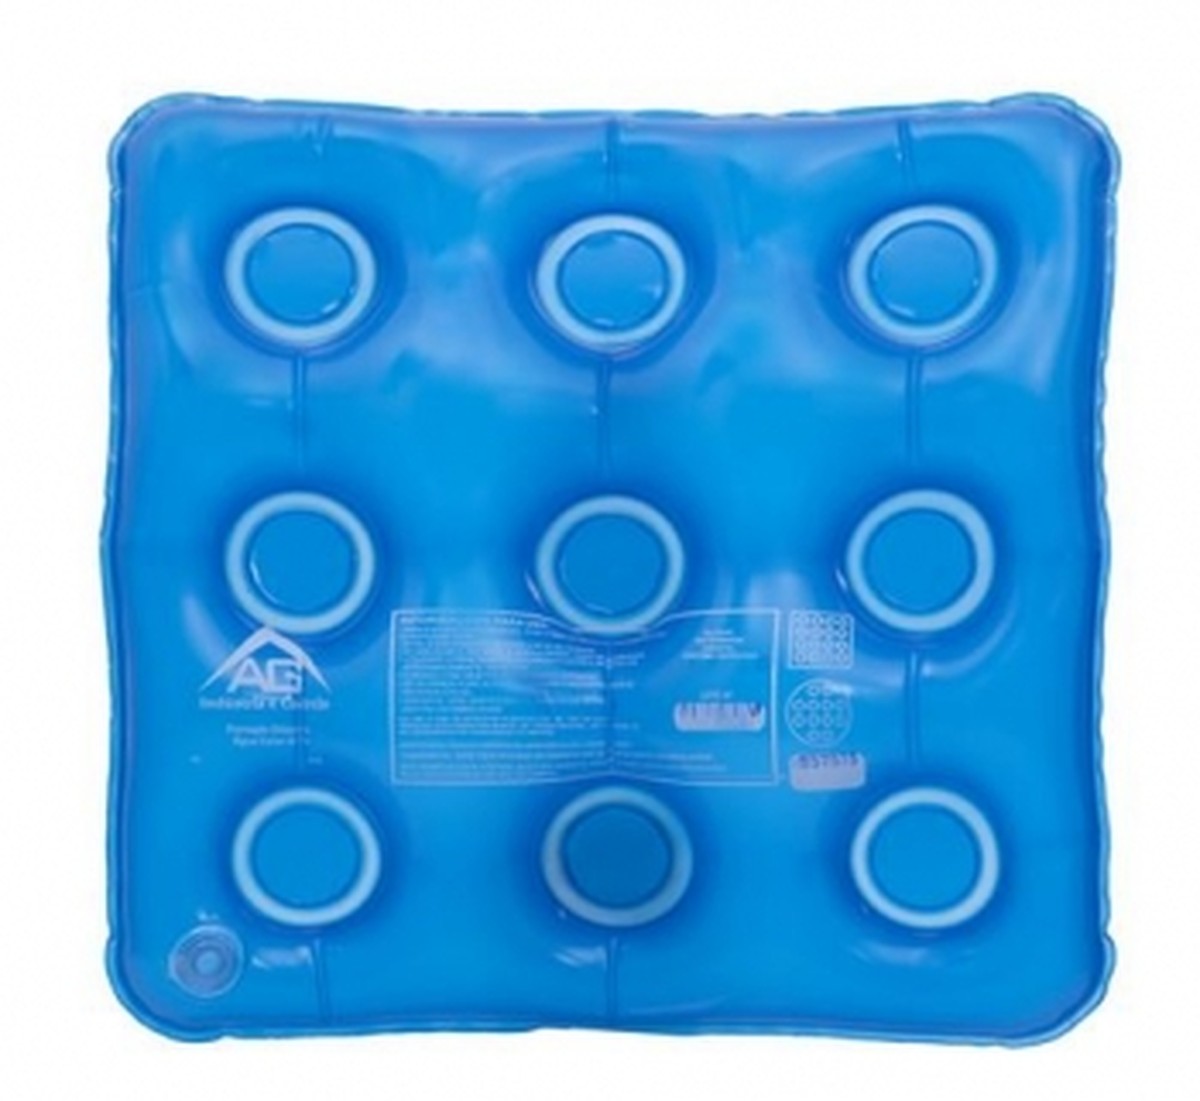 Foto do produto Almofada água quadrada Ref 1118 AG Plastico